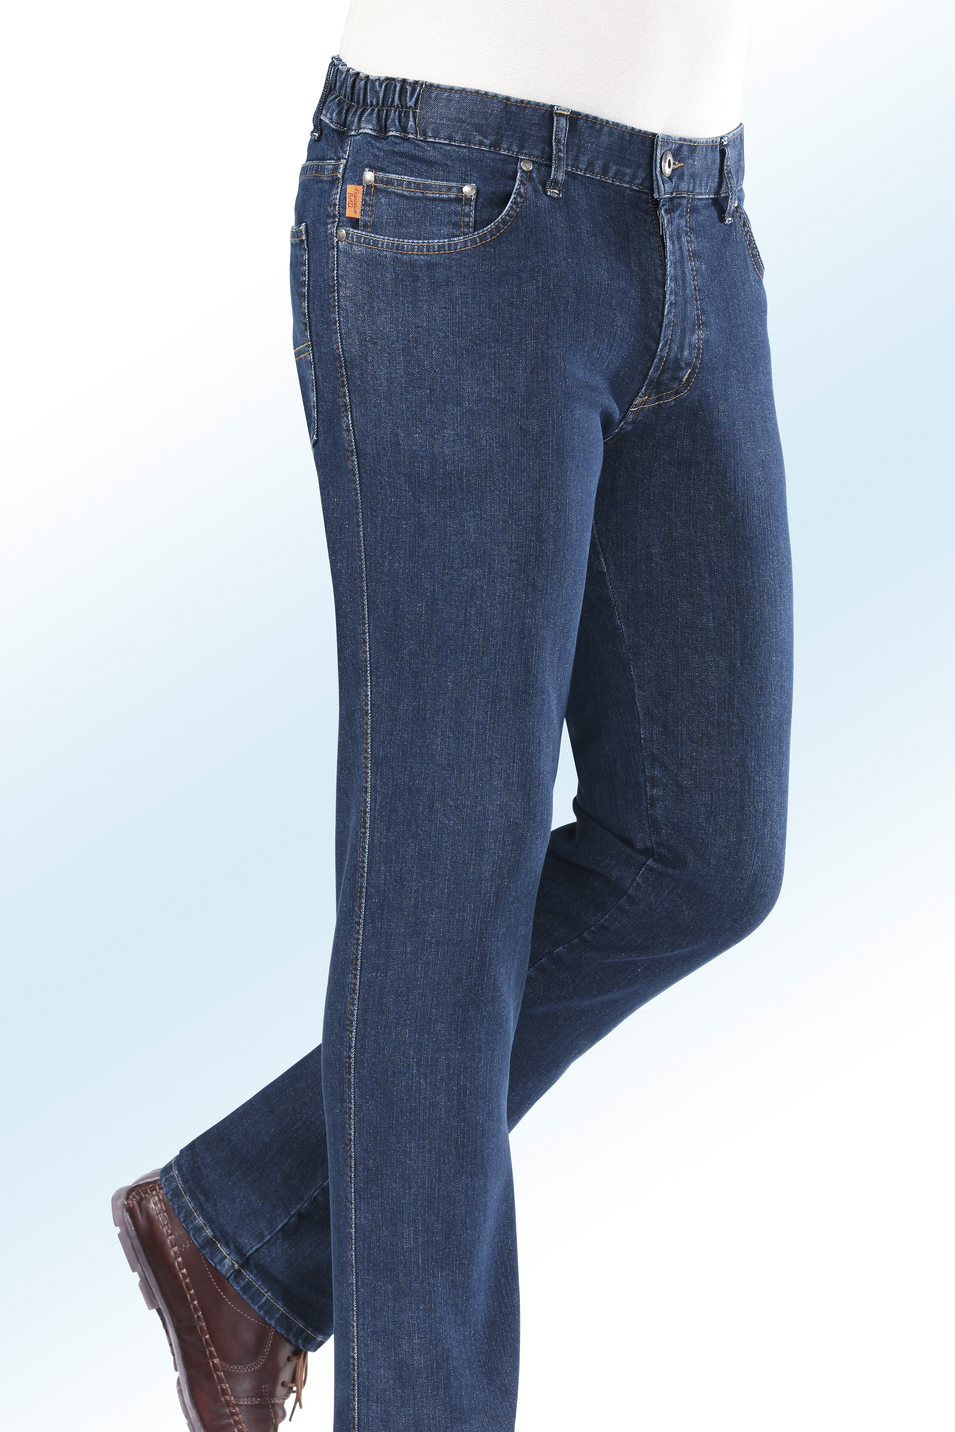 "Francesco Botti"-Jeans mit Dehnbundeinsätzen in 3 Farben, Jeansblau, Größe 54 von FRANCESCO BOTTI